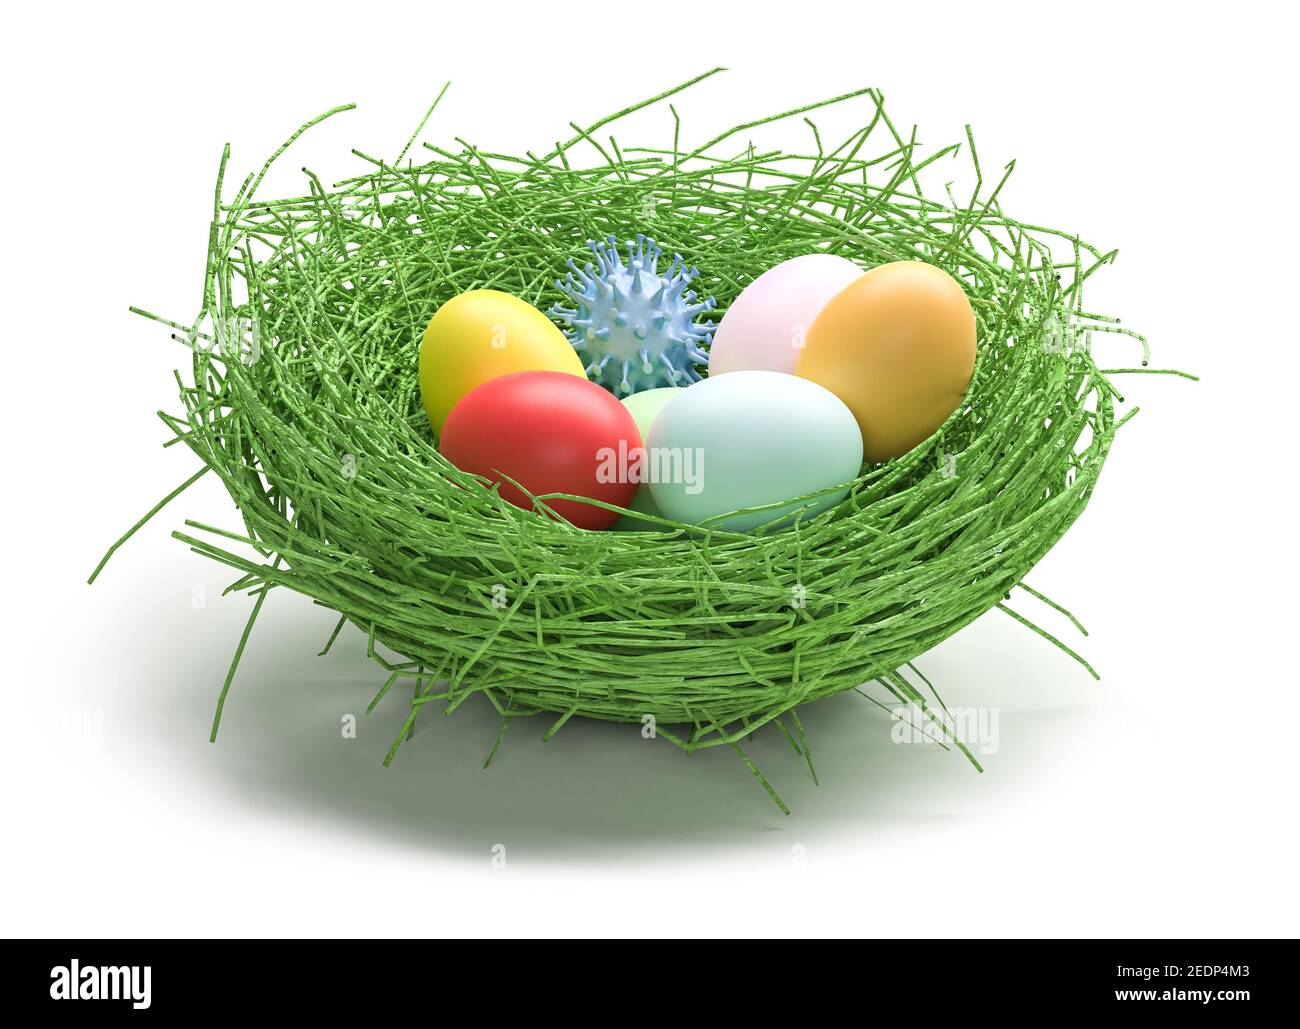 Concetto di Pasqua e Coronavirus: Un nido pasquale con uova di pasqua colorate e un modello di virus corona. Isolato su bianco. Rimani al sicuro a pasqua. Foto Stock